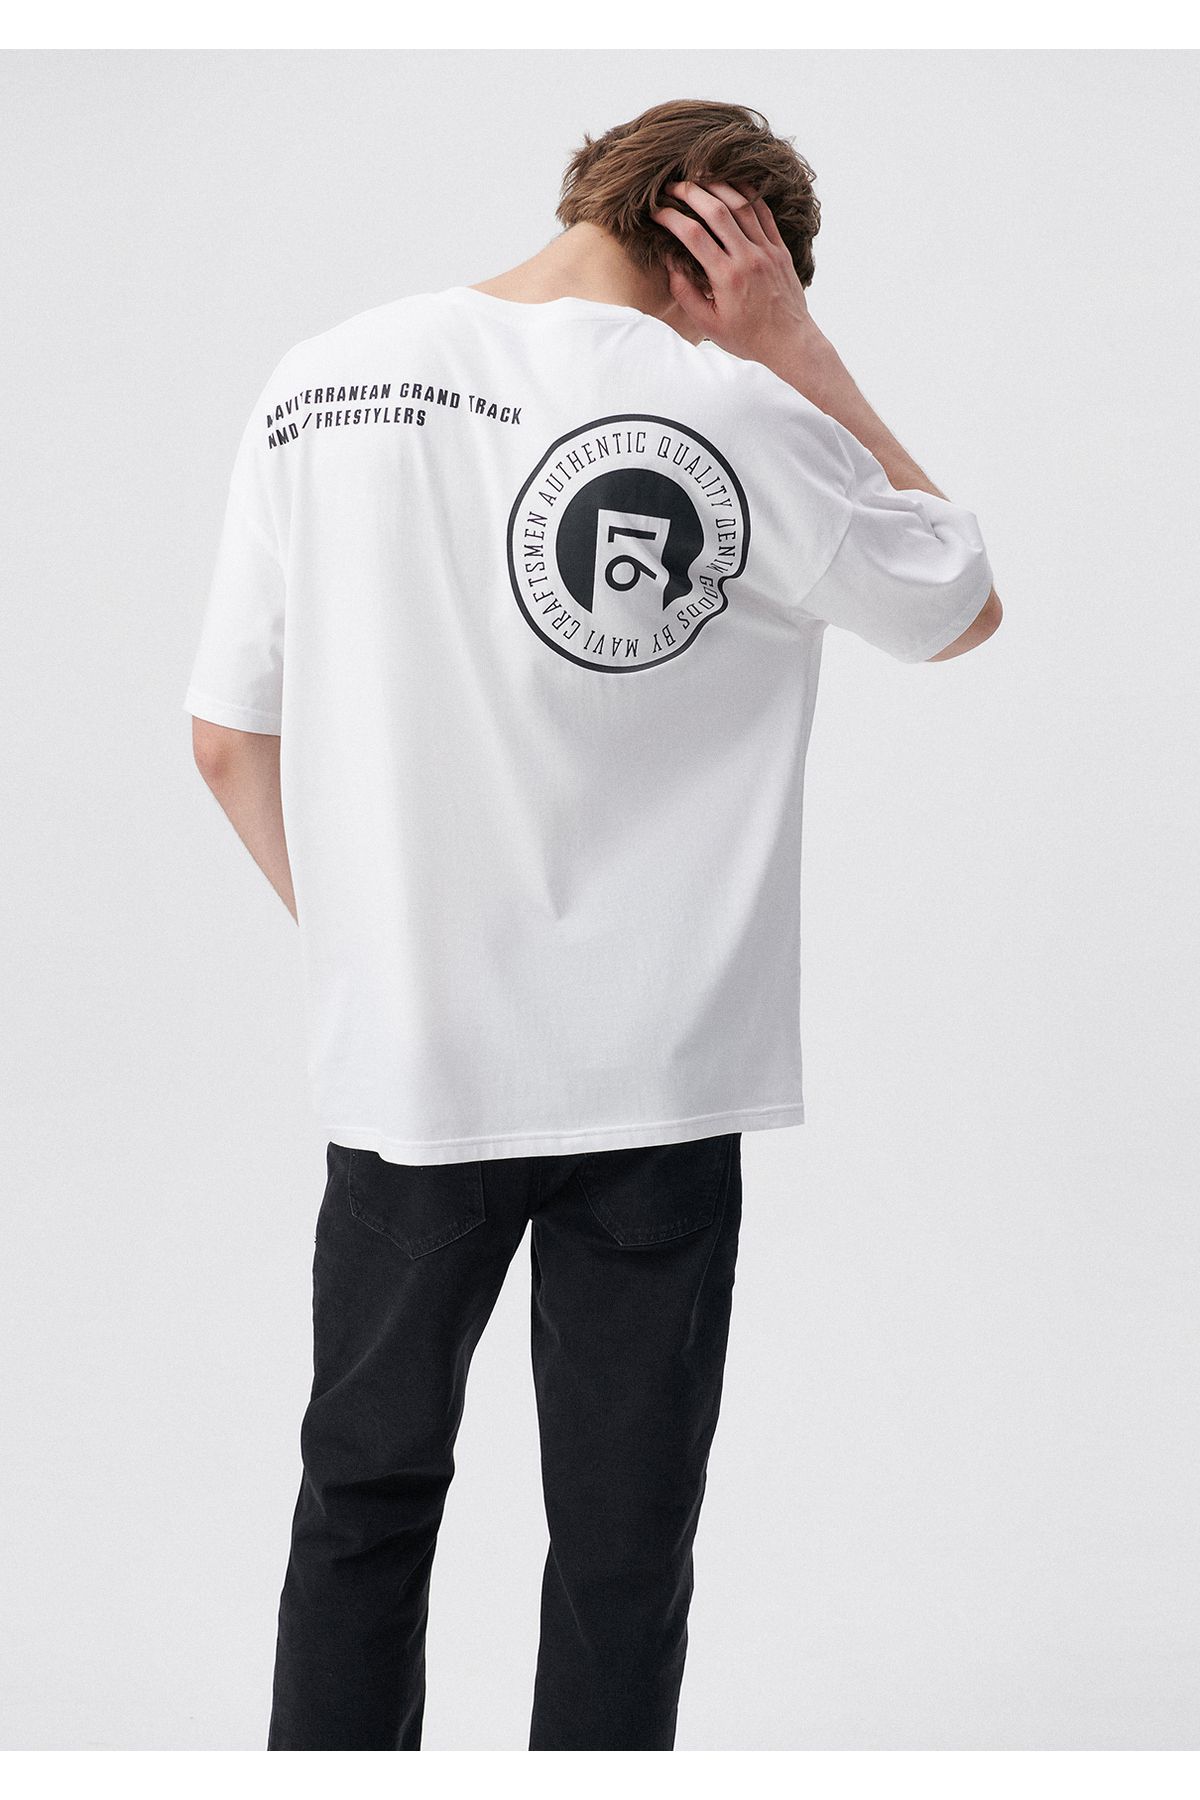 Mavi Ride روی تی شرت سفید چاپ شده بزرگ / بخش گسترده ای 0611633-620